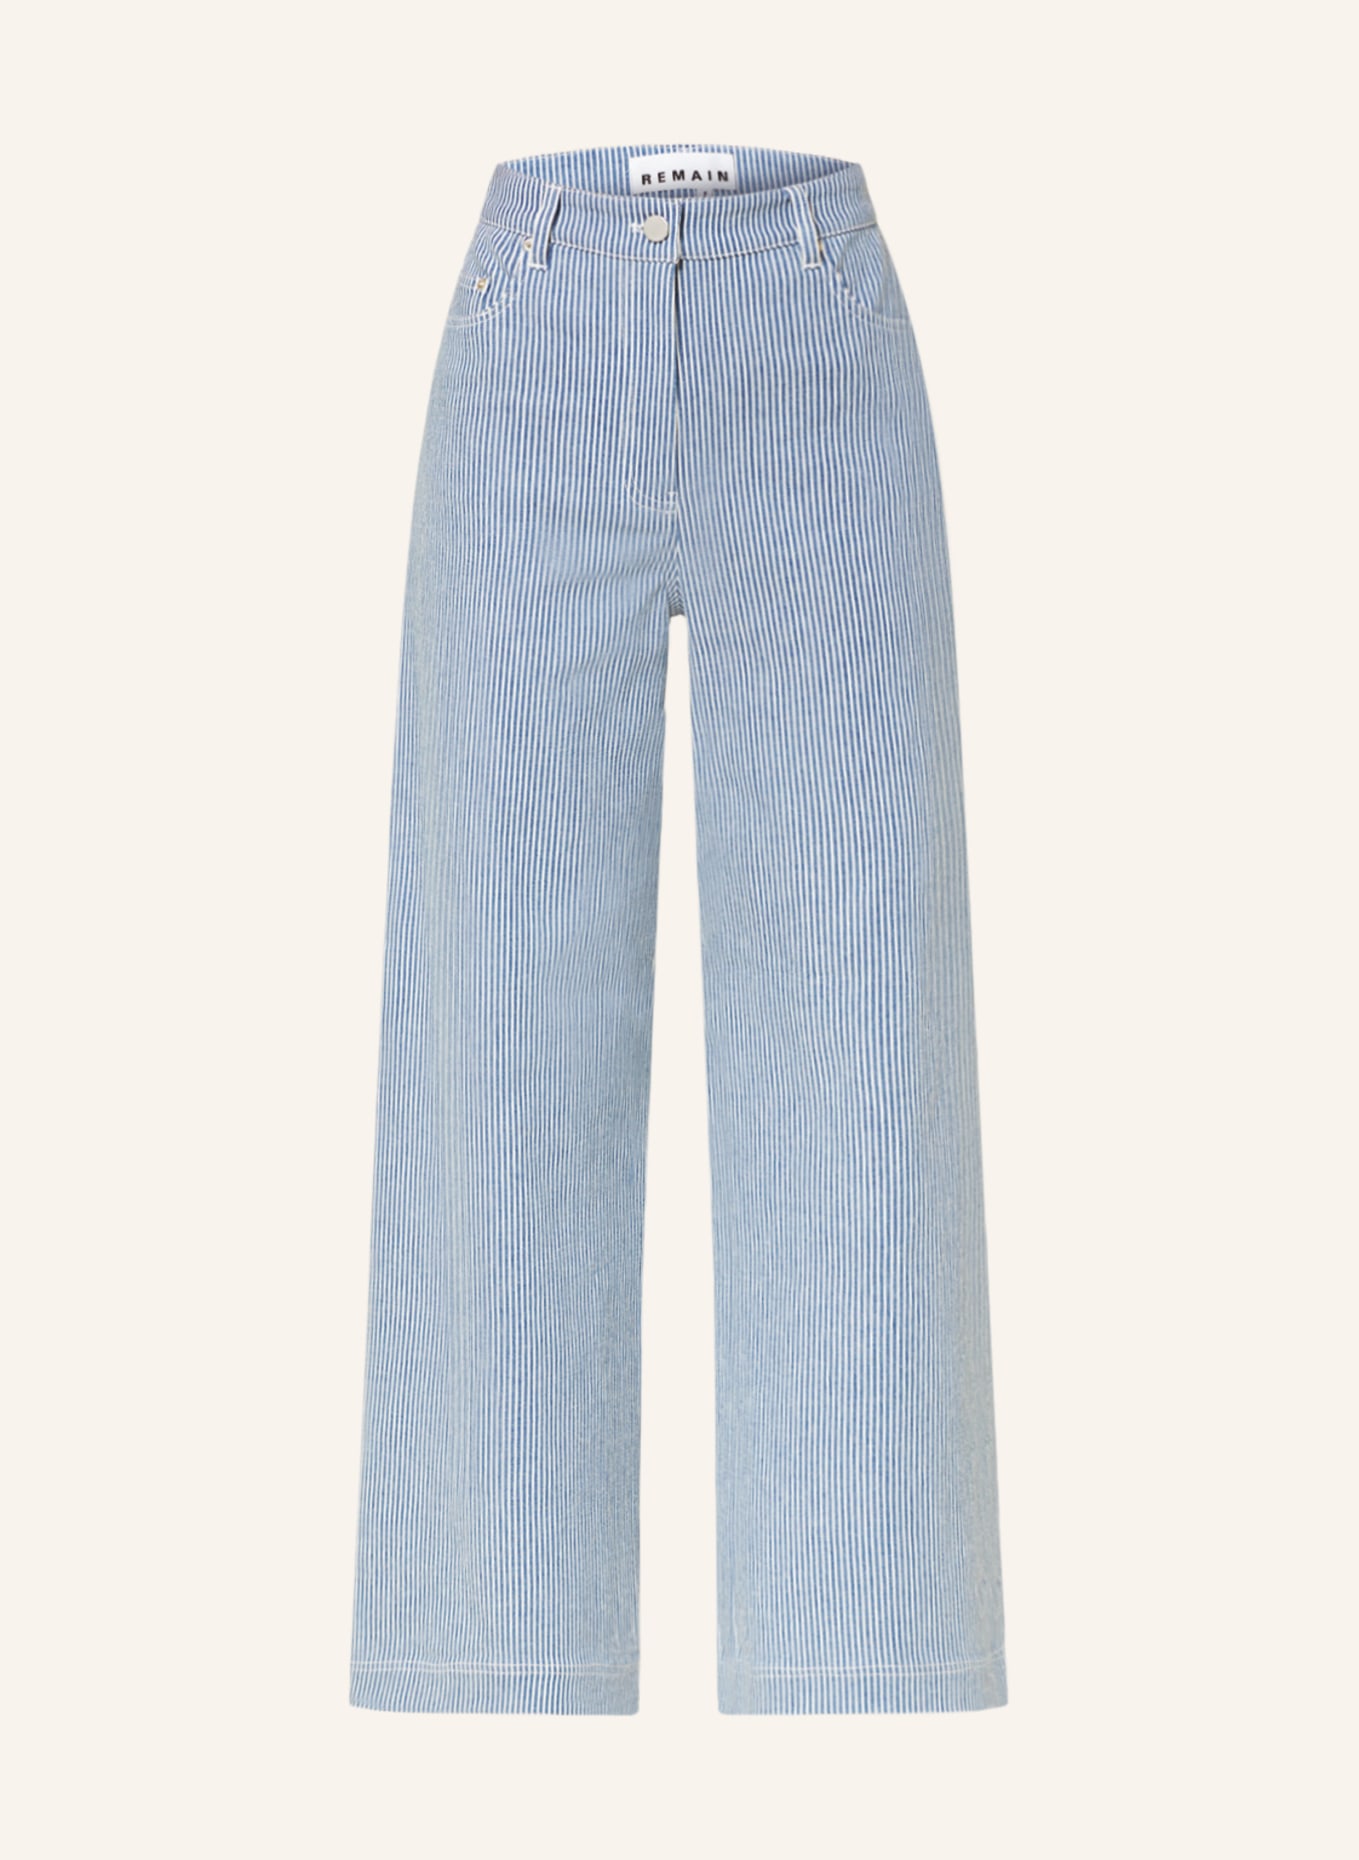 REMAIN Flared Jeans, Farbe: 11-0601 Bright White Comb. (Bild 1)